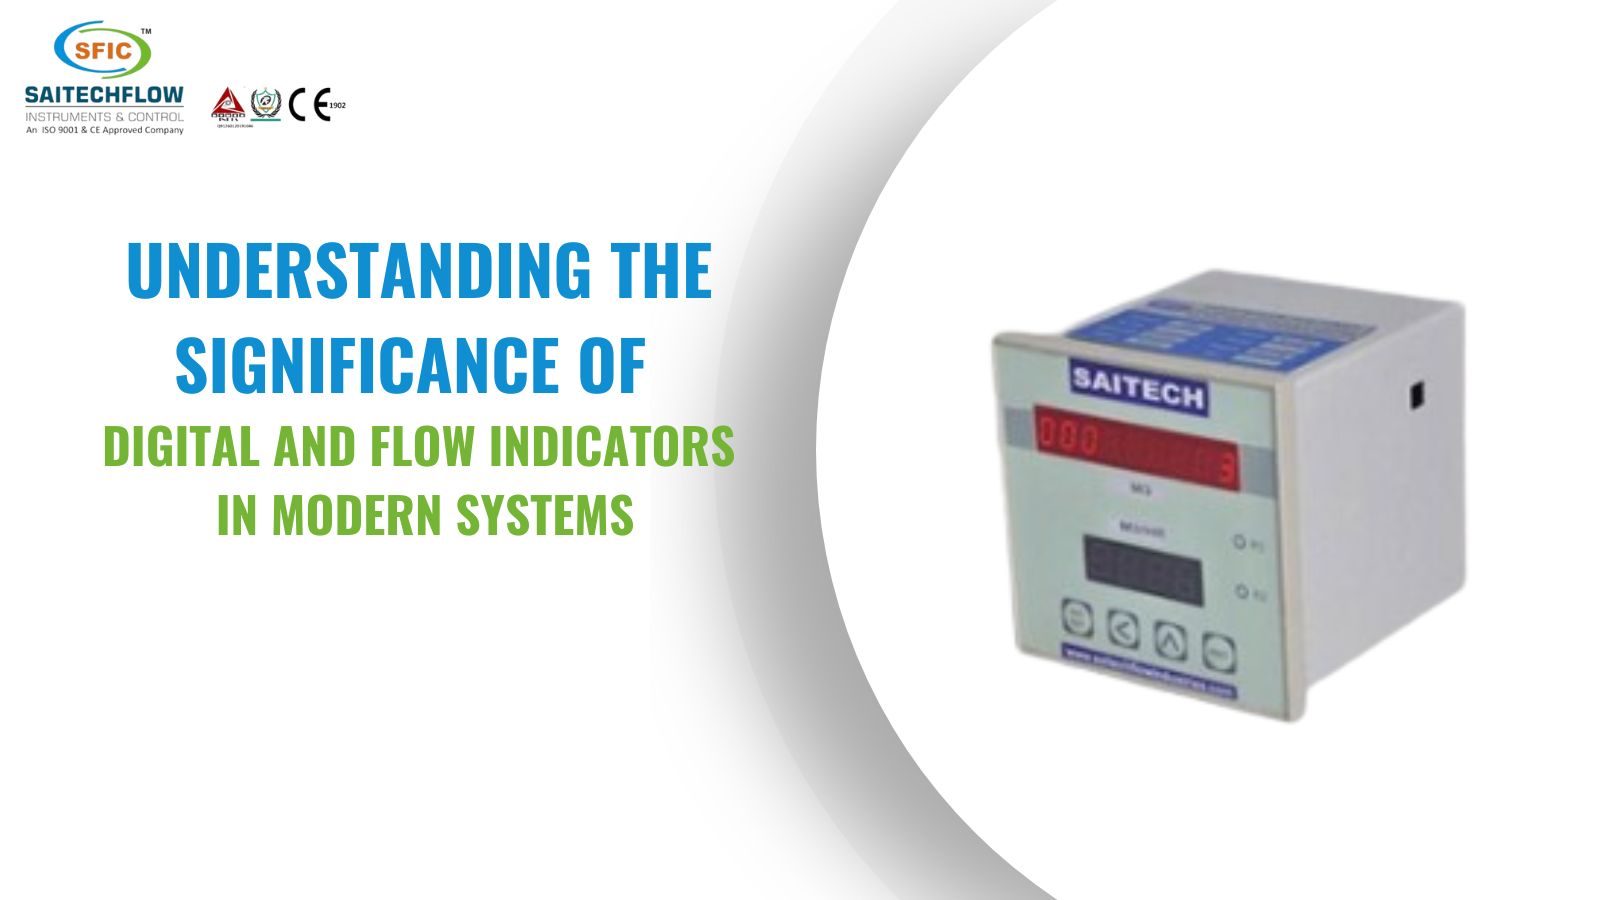  Ultrasonic Flow Meters